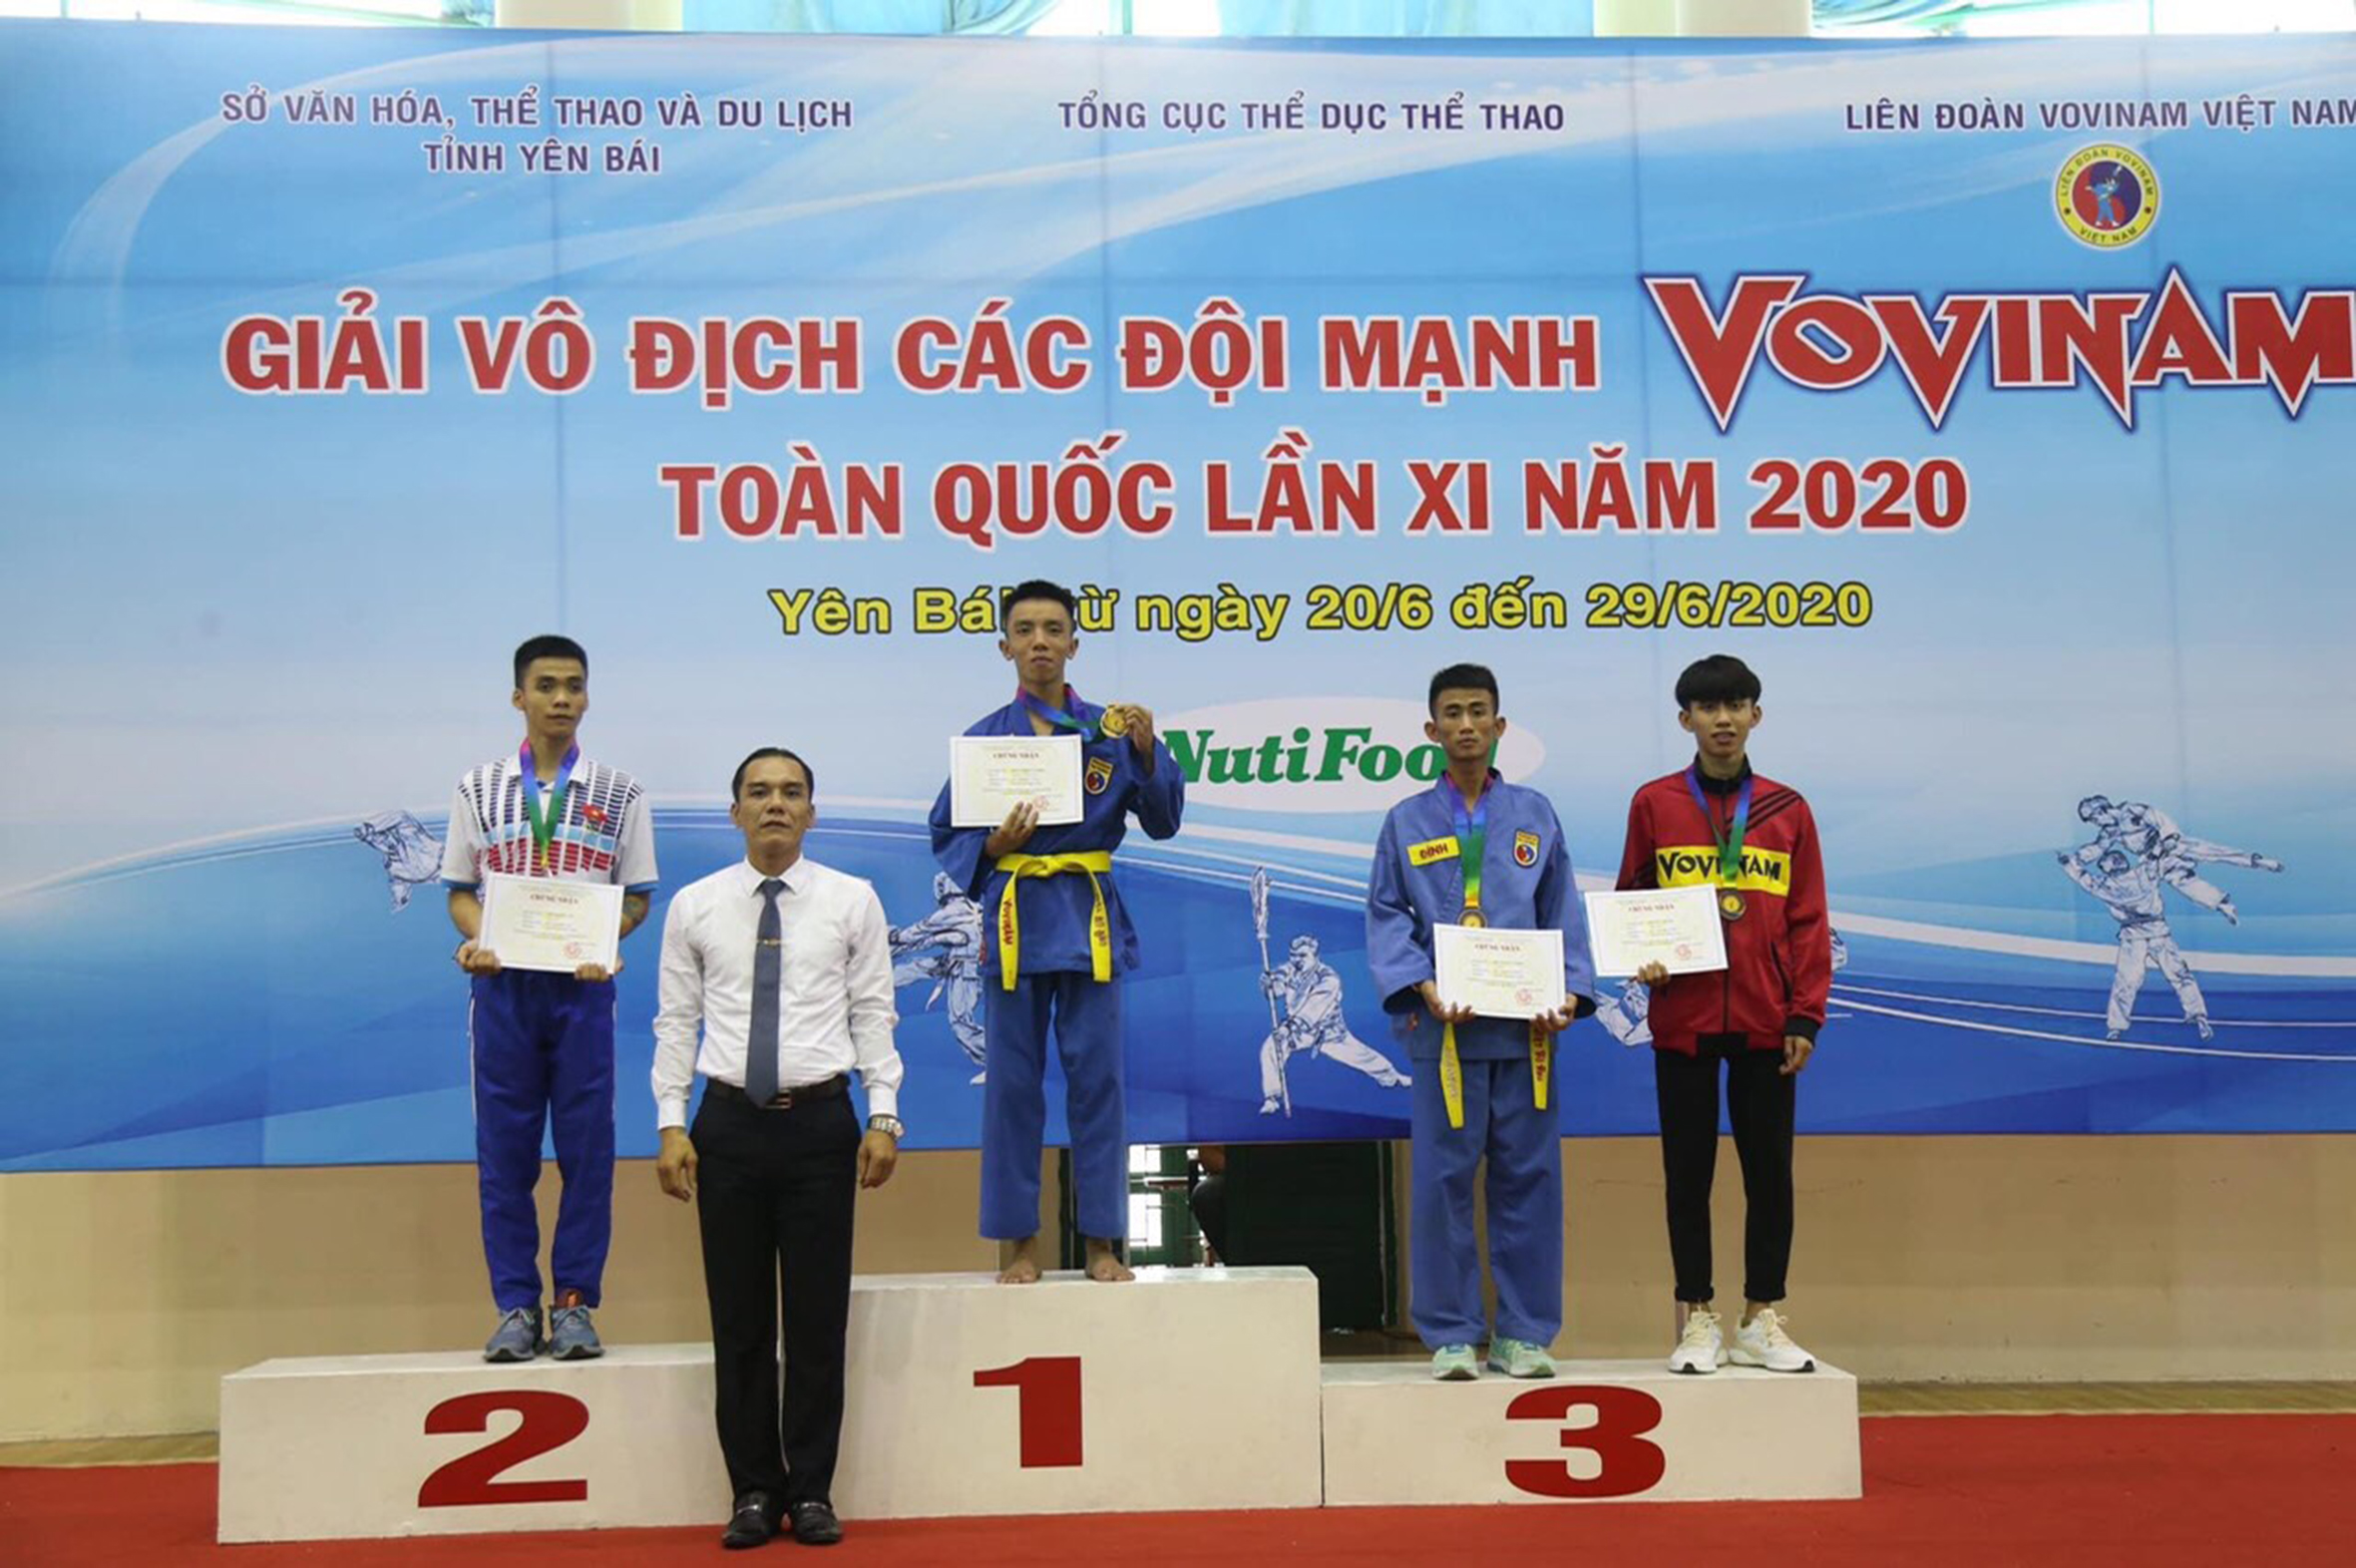 VĐV Phan Trọng Nghĩa giành HCV ở Giải vô địch các đội mạnh Vovinam toàn quốc lần thứ XI năm 2020.